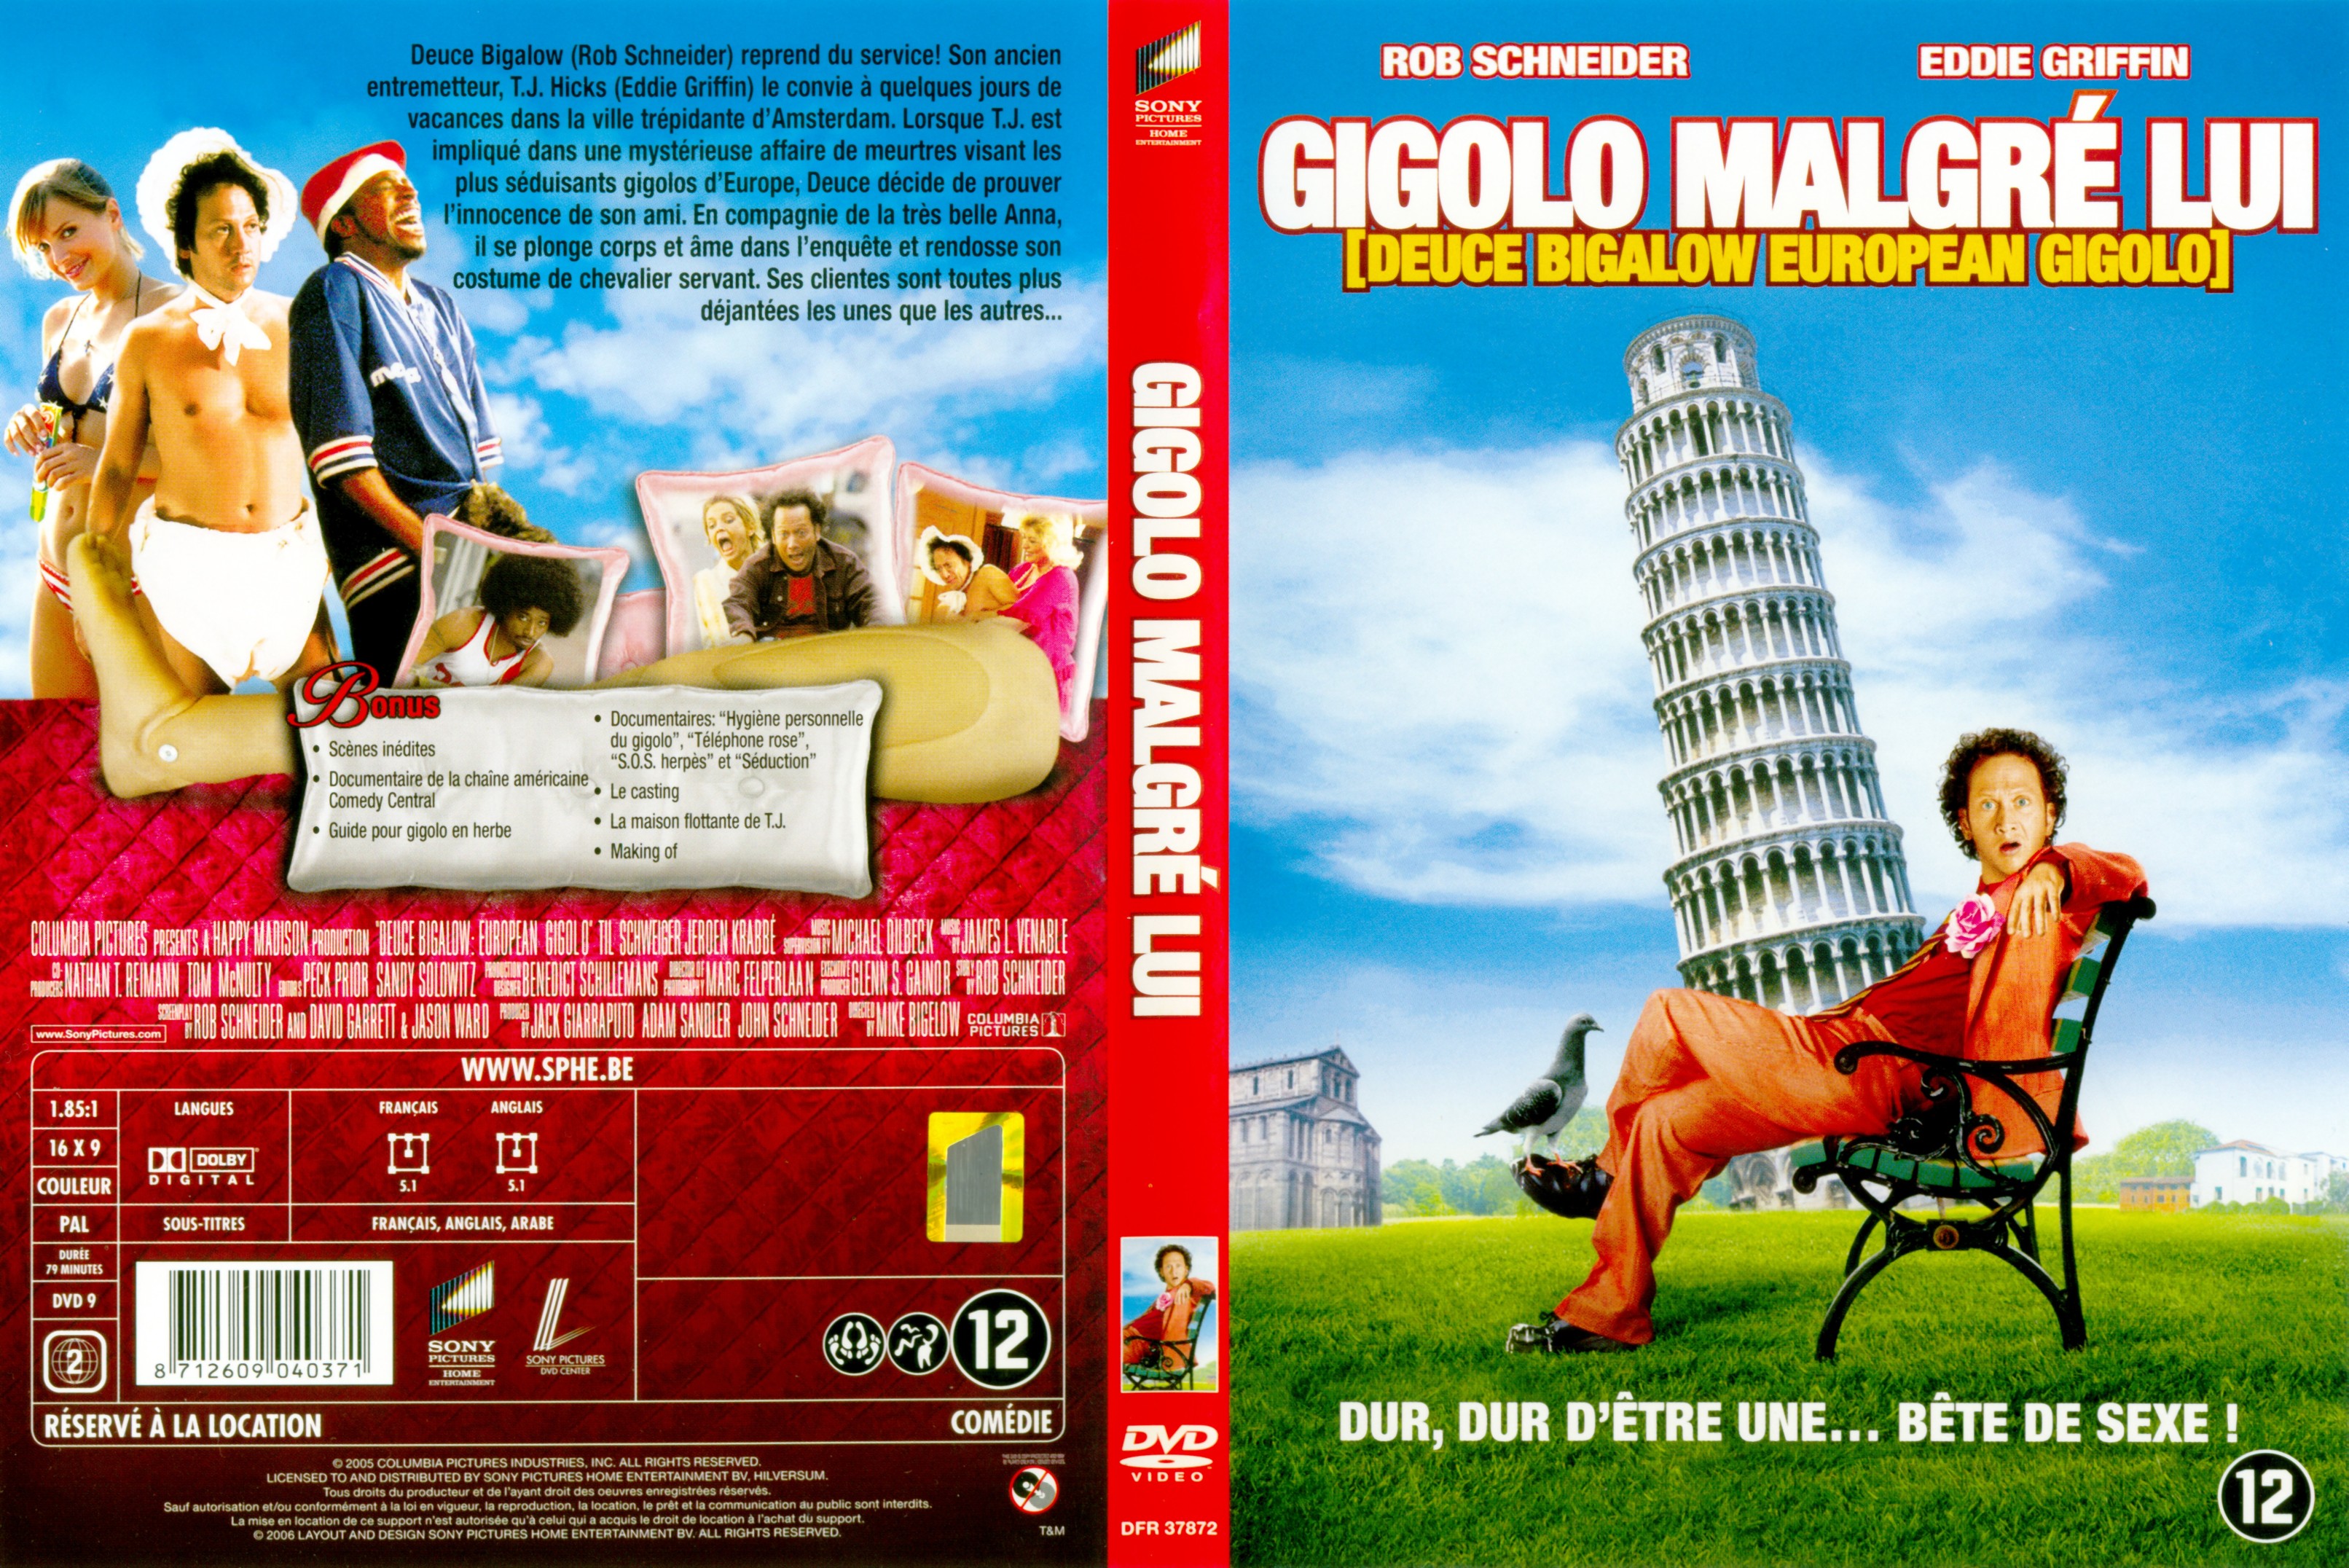 Jaquette DVD Gigolo malgr lui v2